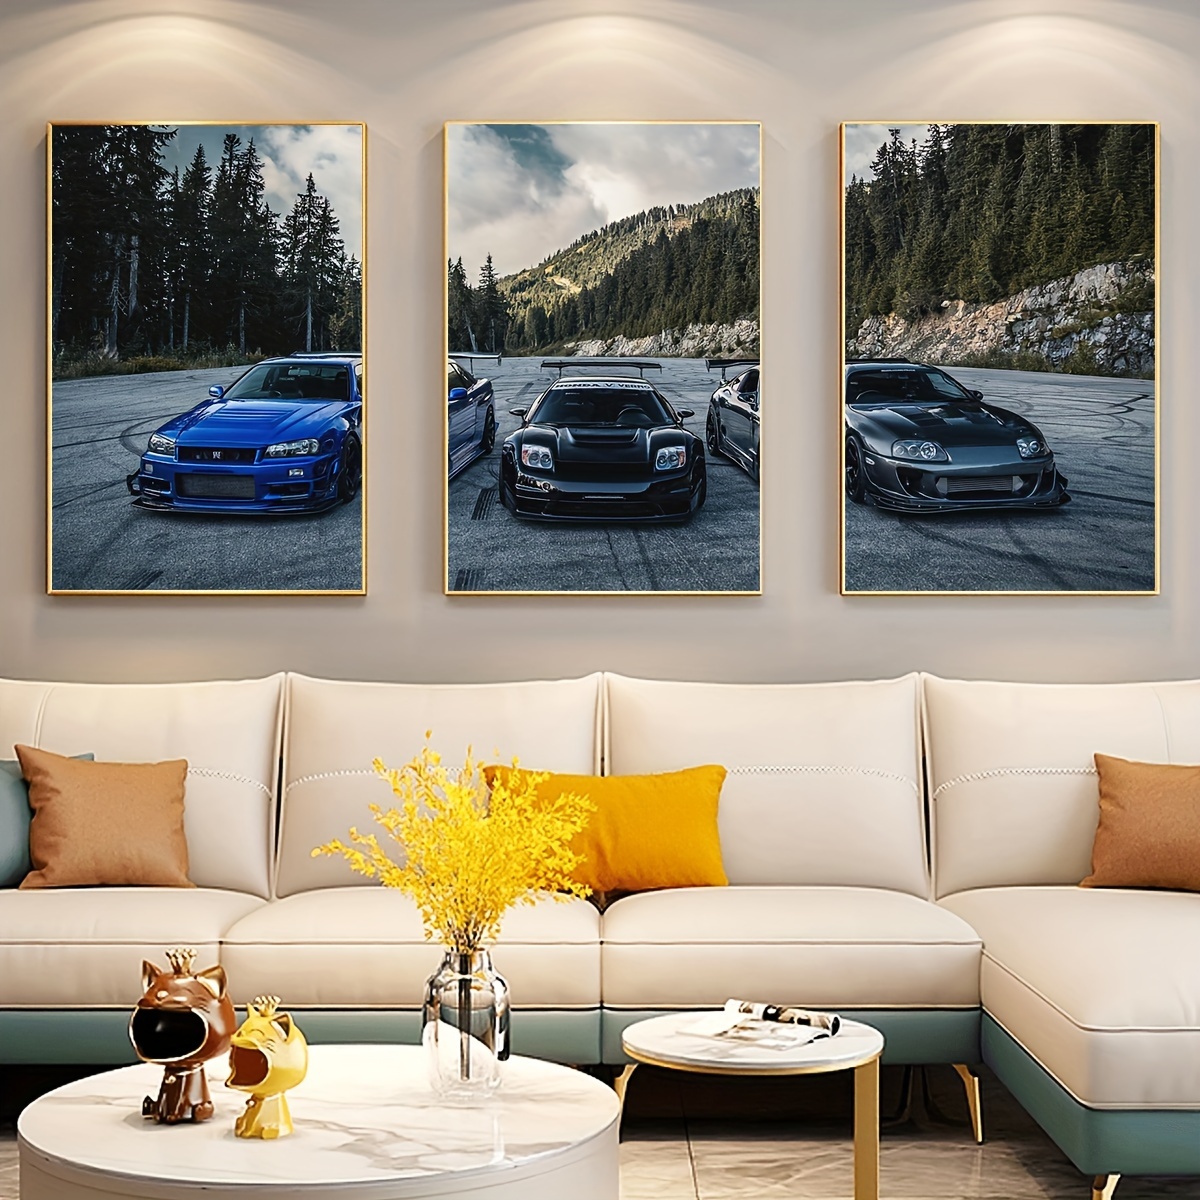  3 piezas de coche vintage coches pintura pintura la imagen  impresión en lienzo viejo auto fotos arte arte moderno para sala de estar  comedor decoración del hogar regalo : Hogar y